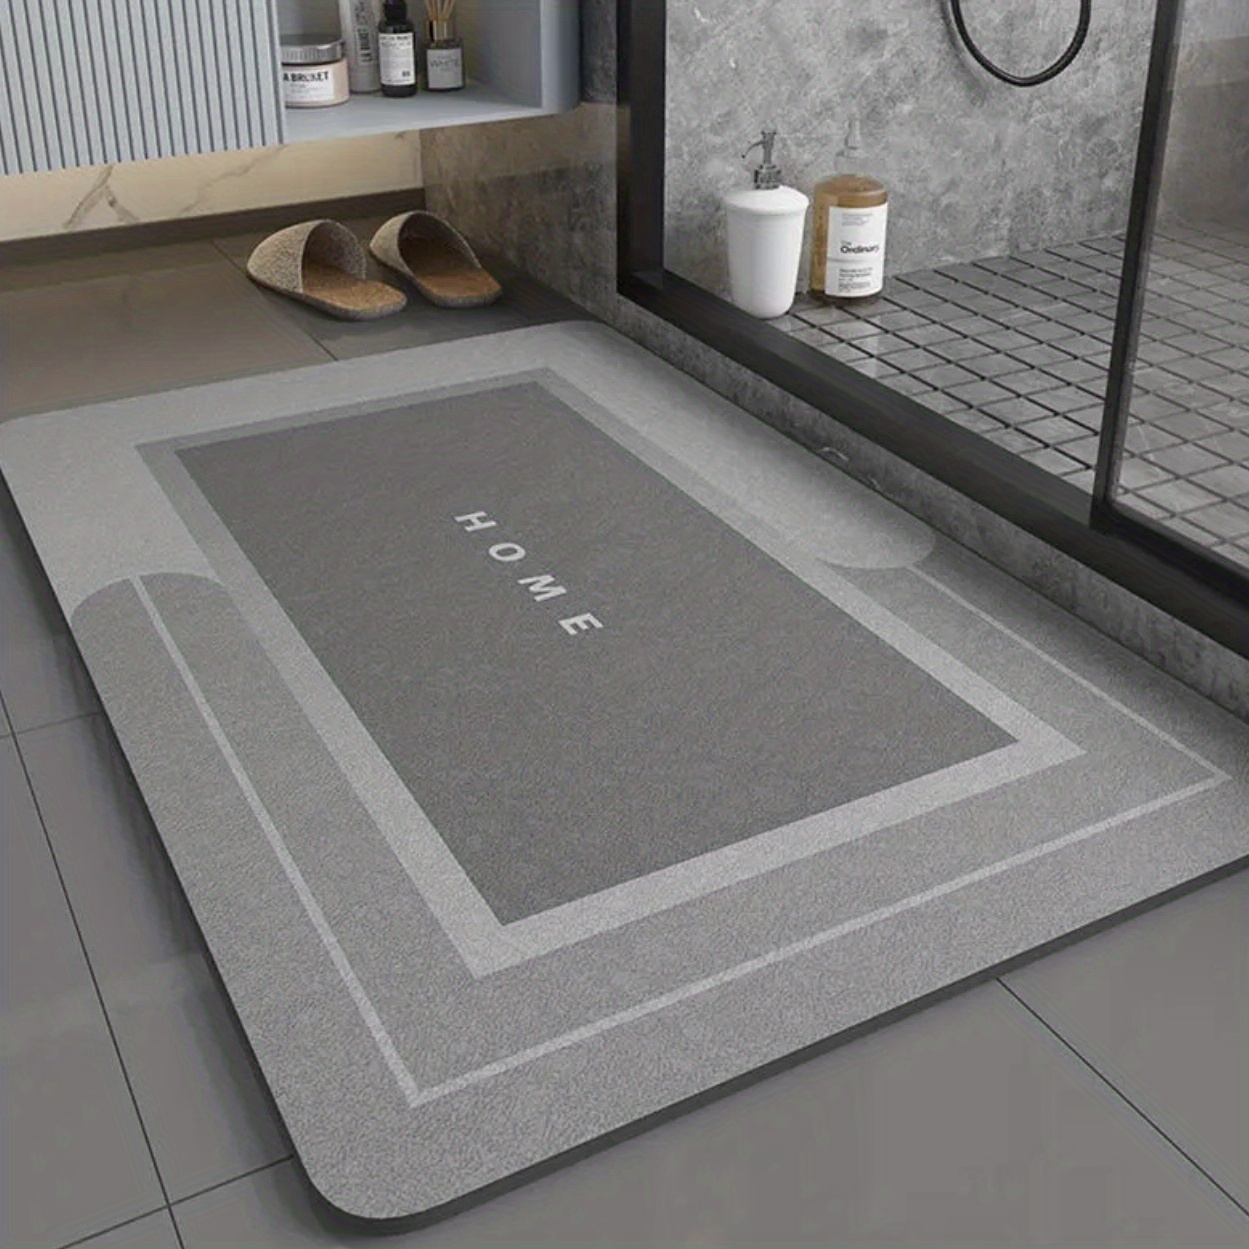 Nordic Super Absorbent Bath Mat Quick Drying Bathroom Rug Non-slip Entrance  Doormat Skin Floor Mats Toilet Carpet Home Decor - AliExpress